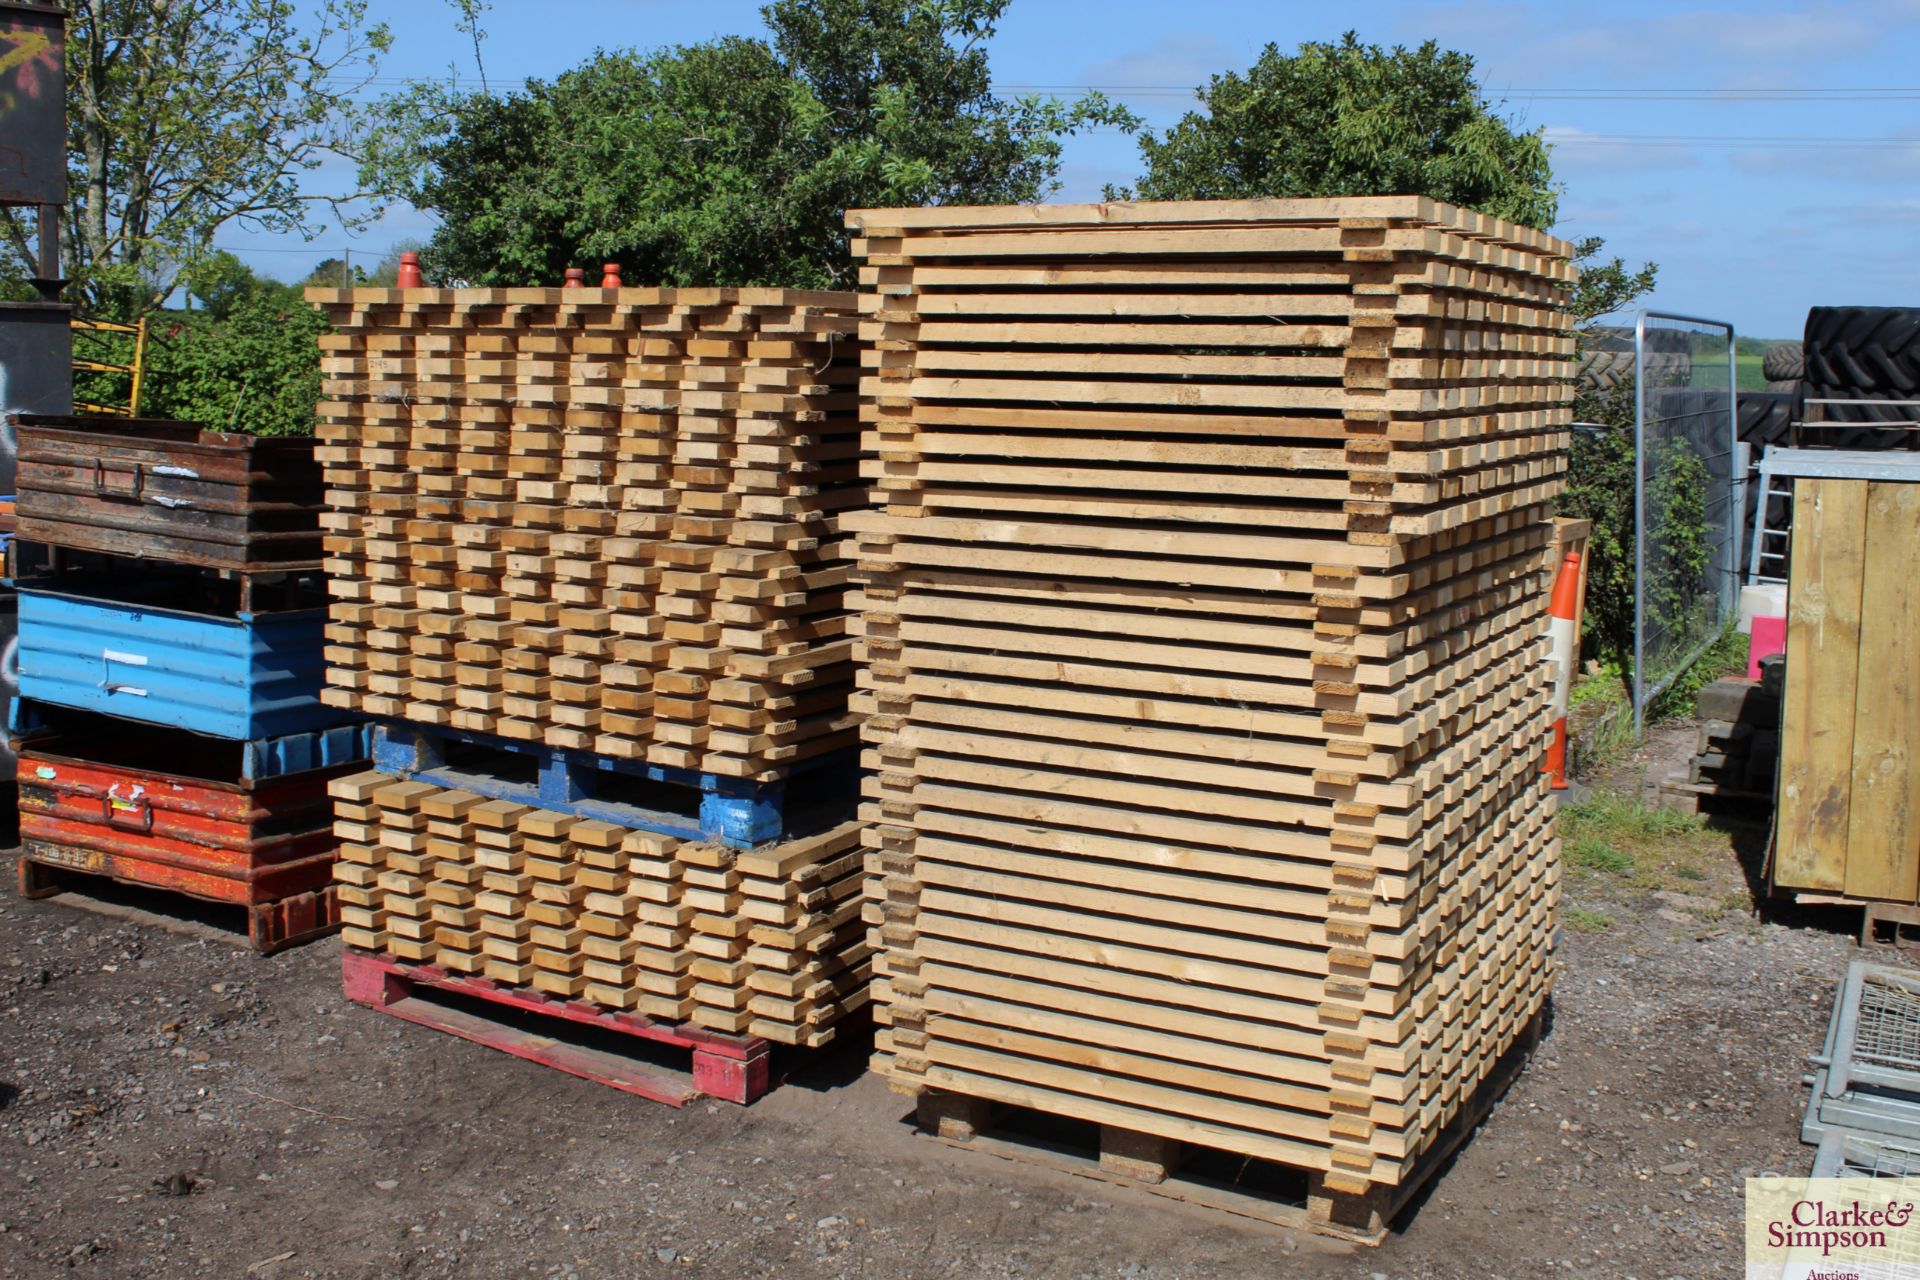 c.60x 1.3m x 1.1m wooden pallet racking shelves. V